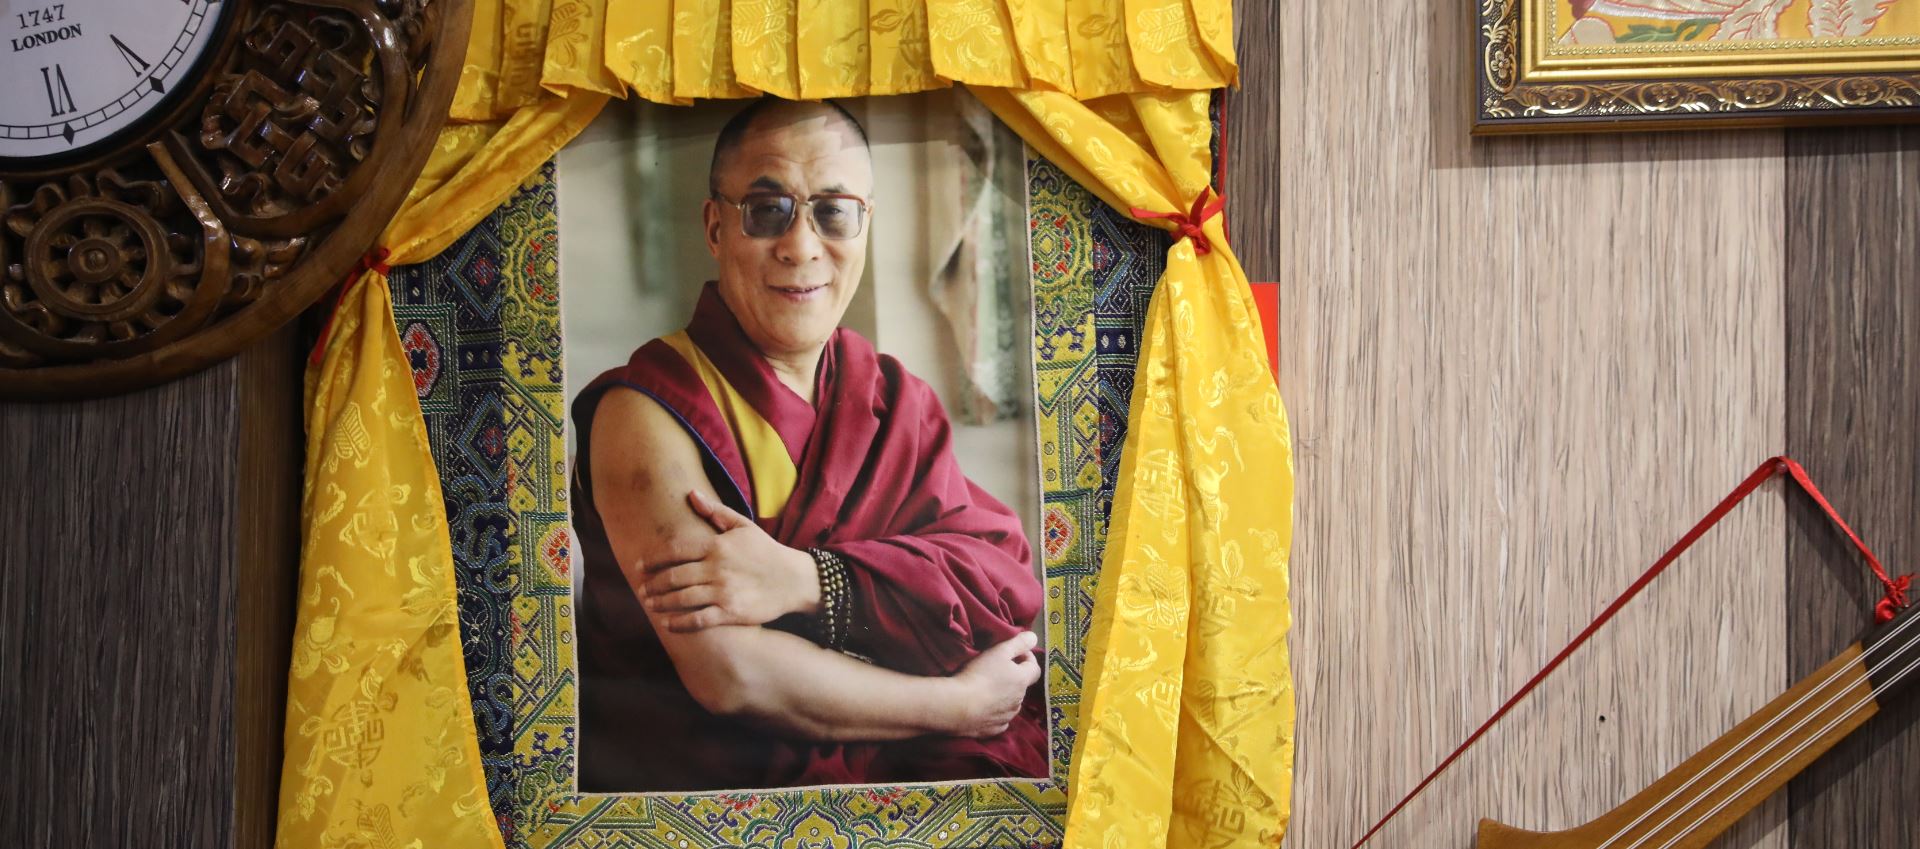 dalai lama mal